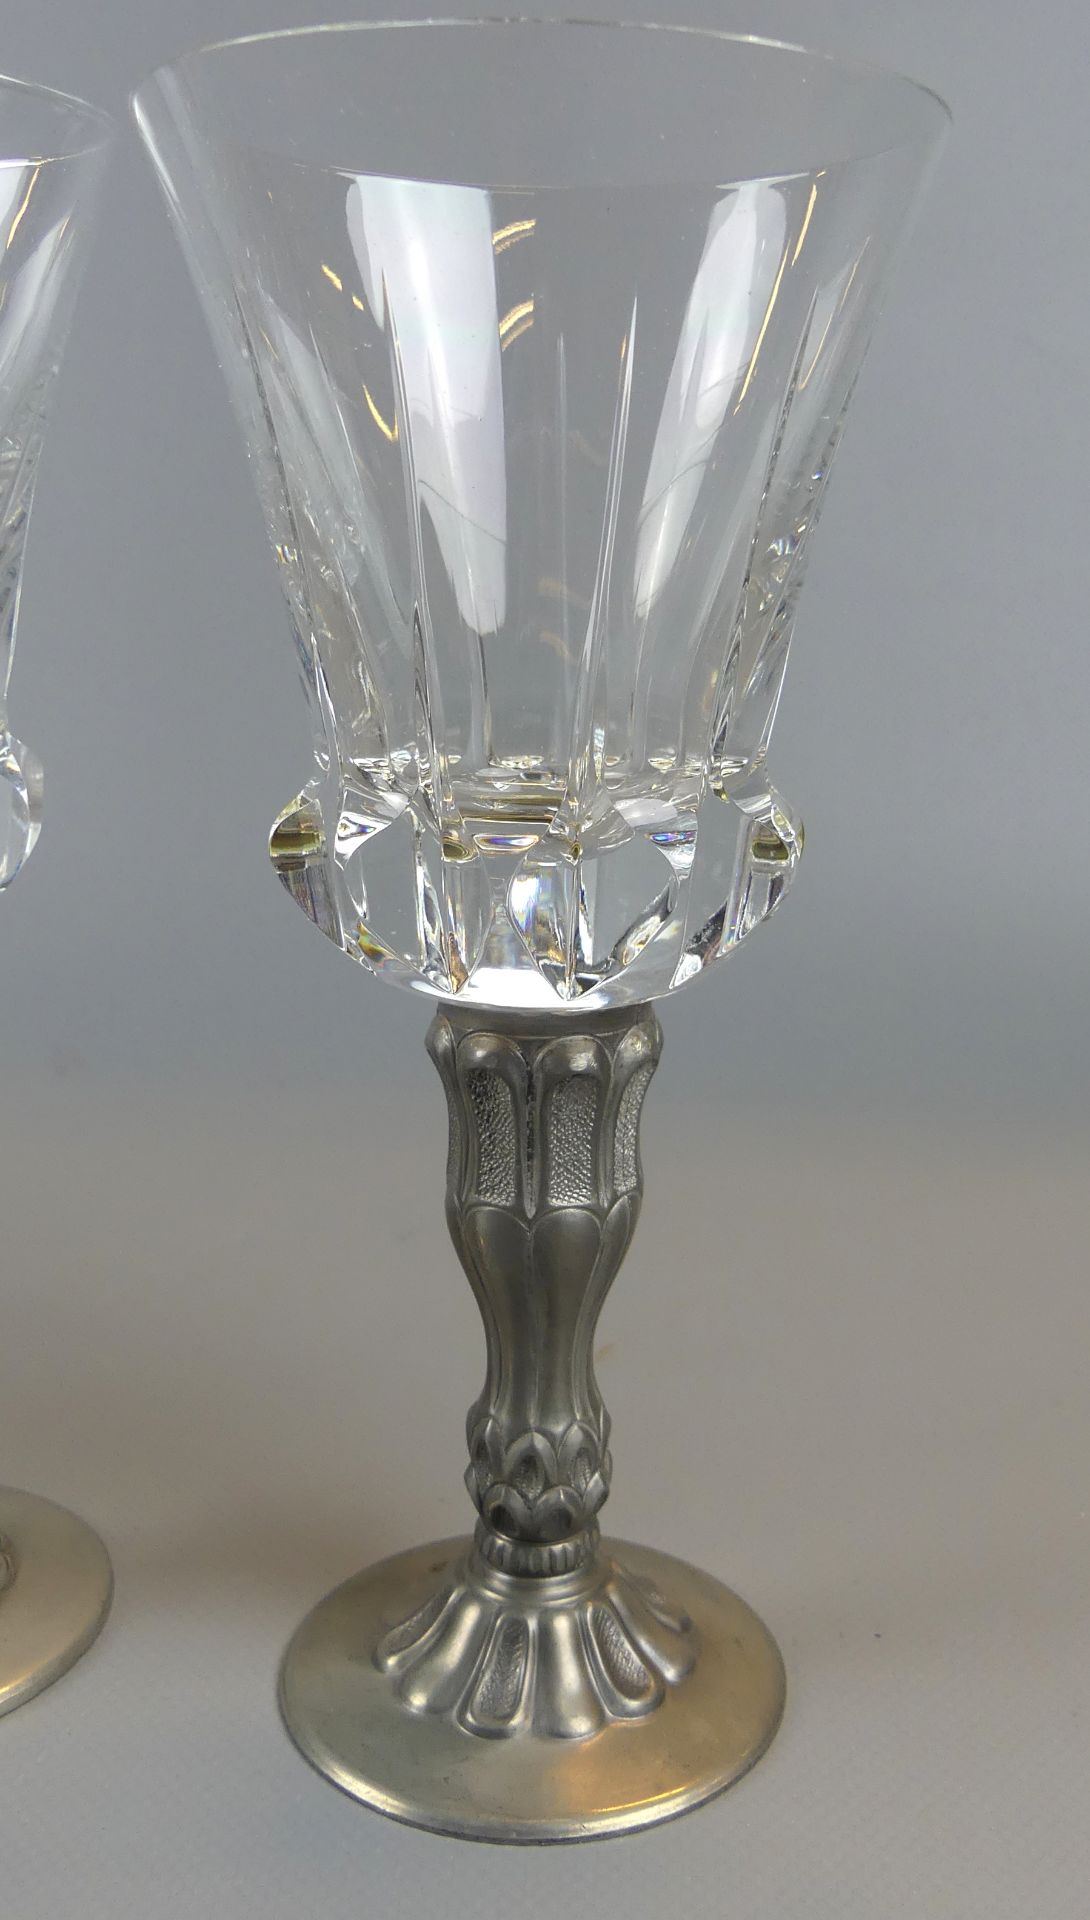 6 Weingläser, Kristall mit Zinnfuß, Höhe ca. 17,5 cm, sehr guter Zustand - Image 2 of 2